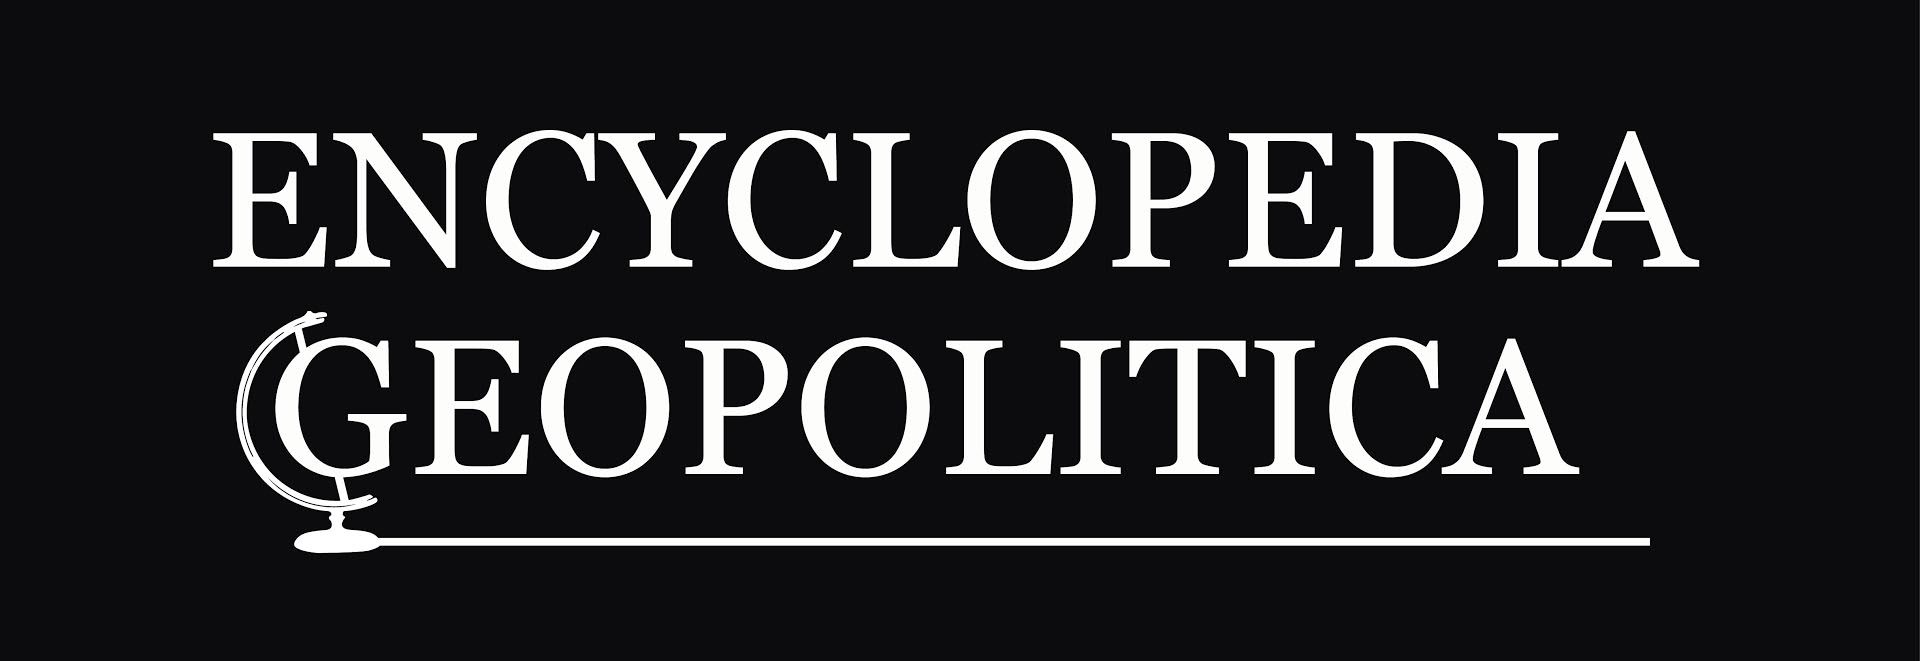 Encyclopedia Geopolitica